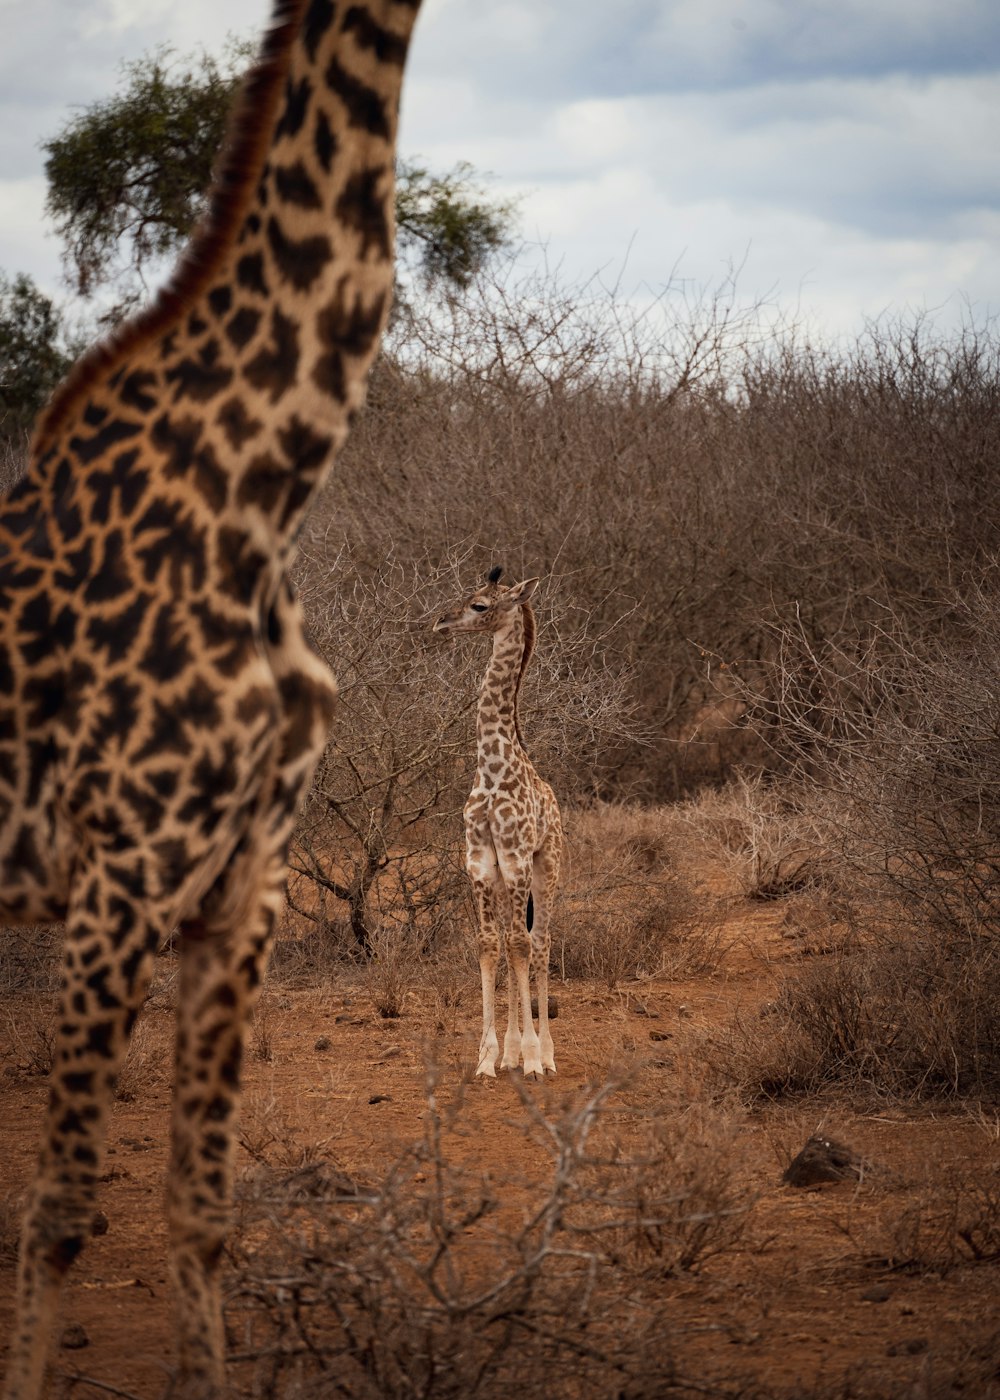 uma girafa e seu bezerro em uma pastagem